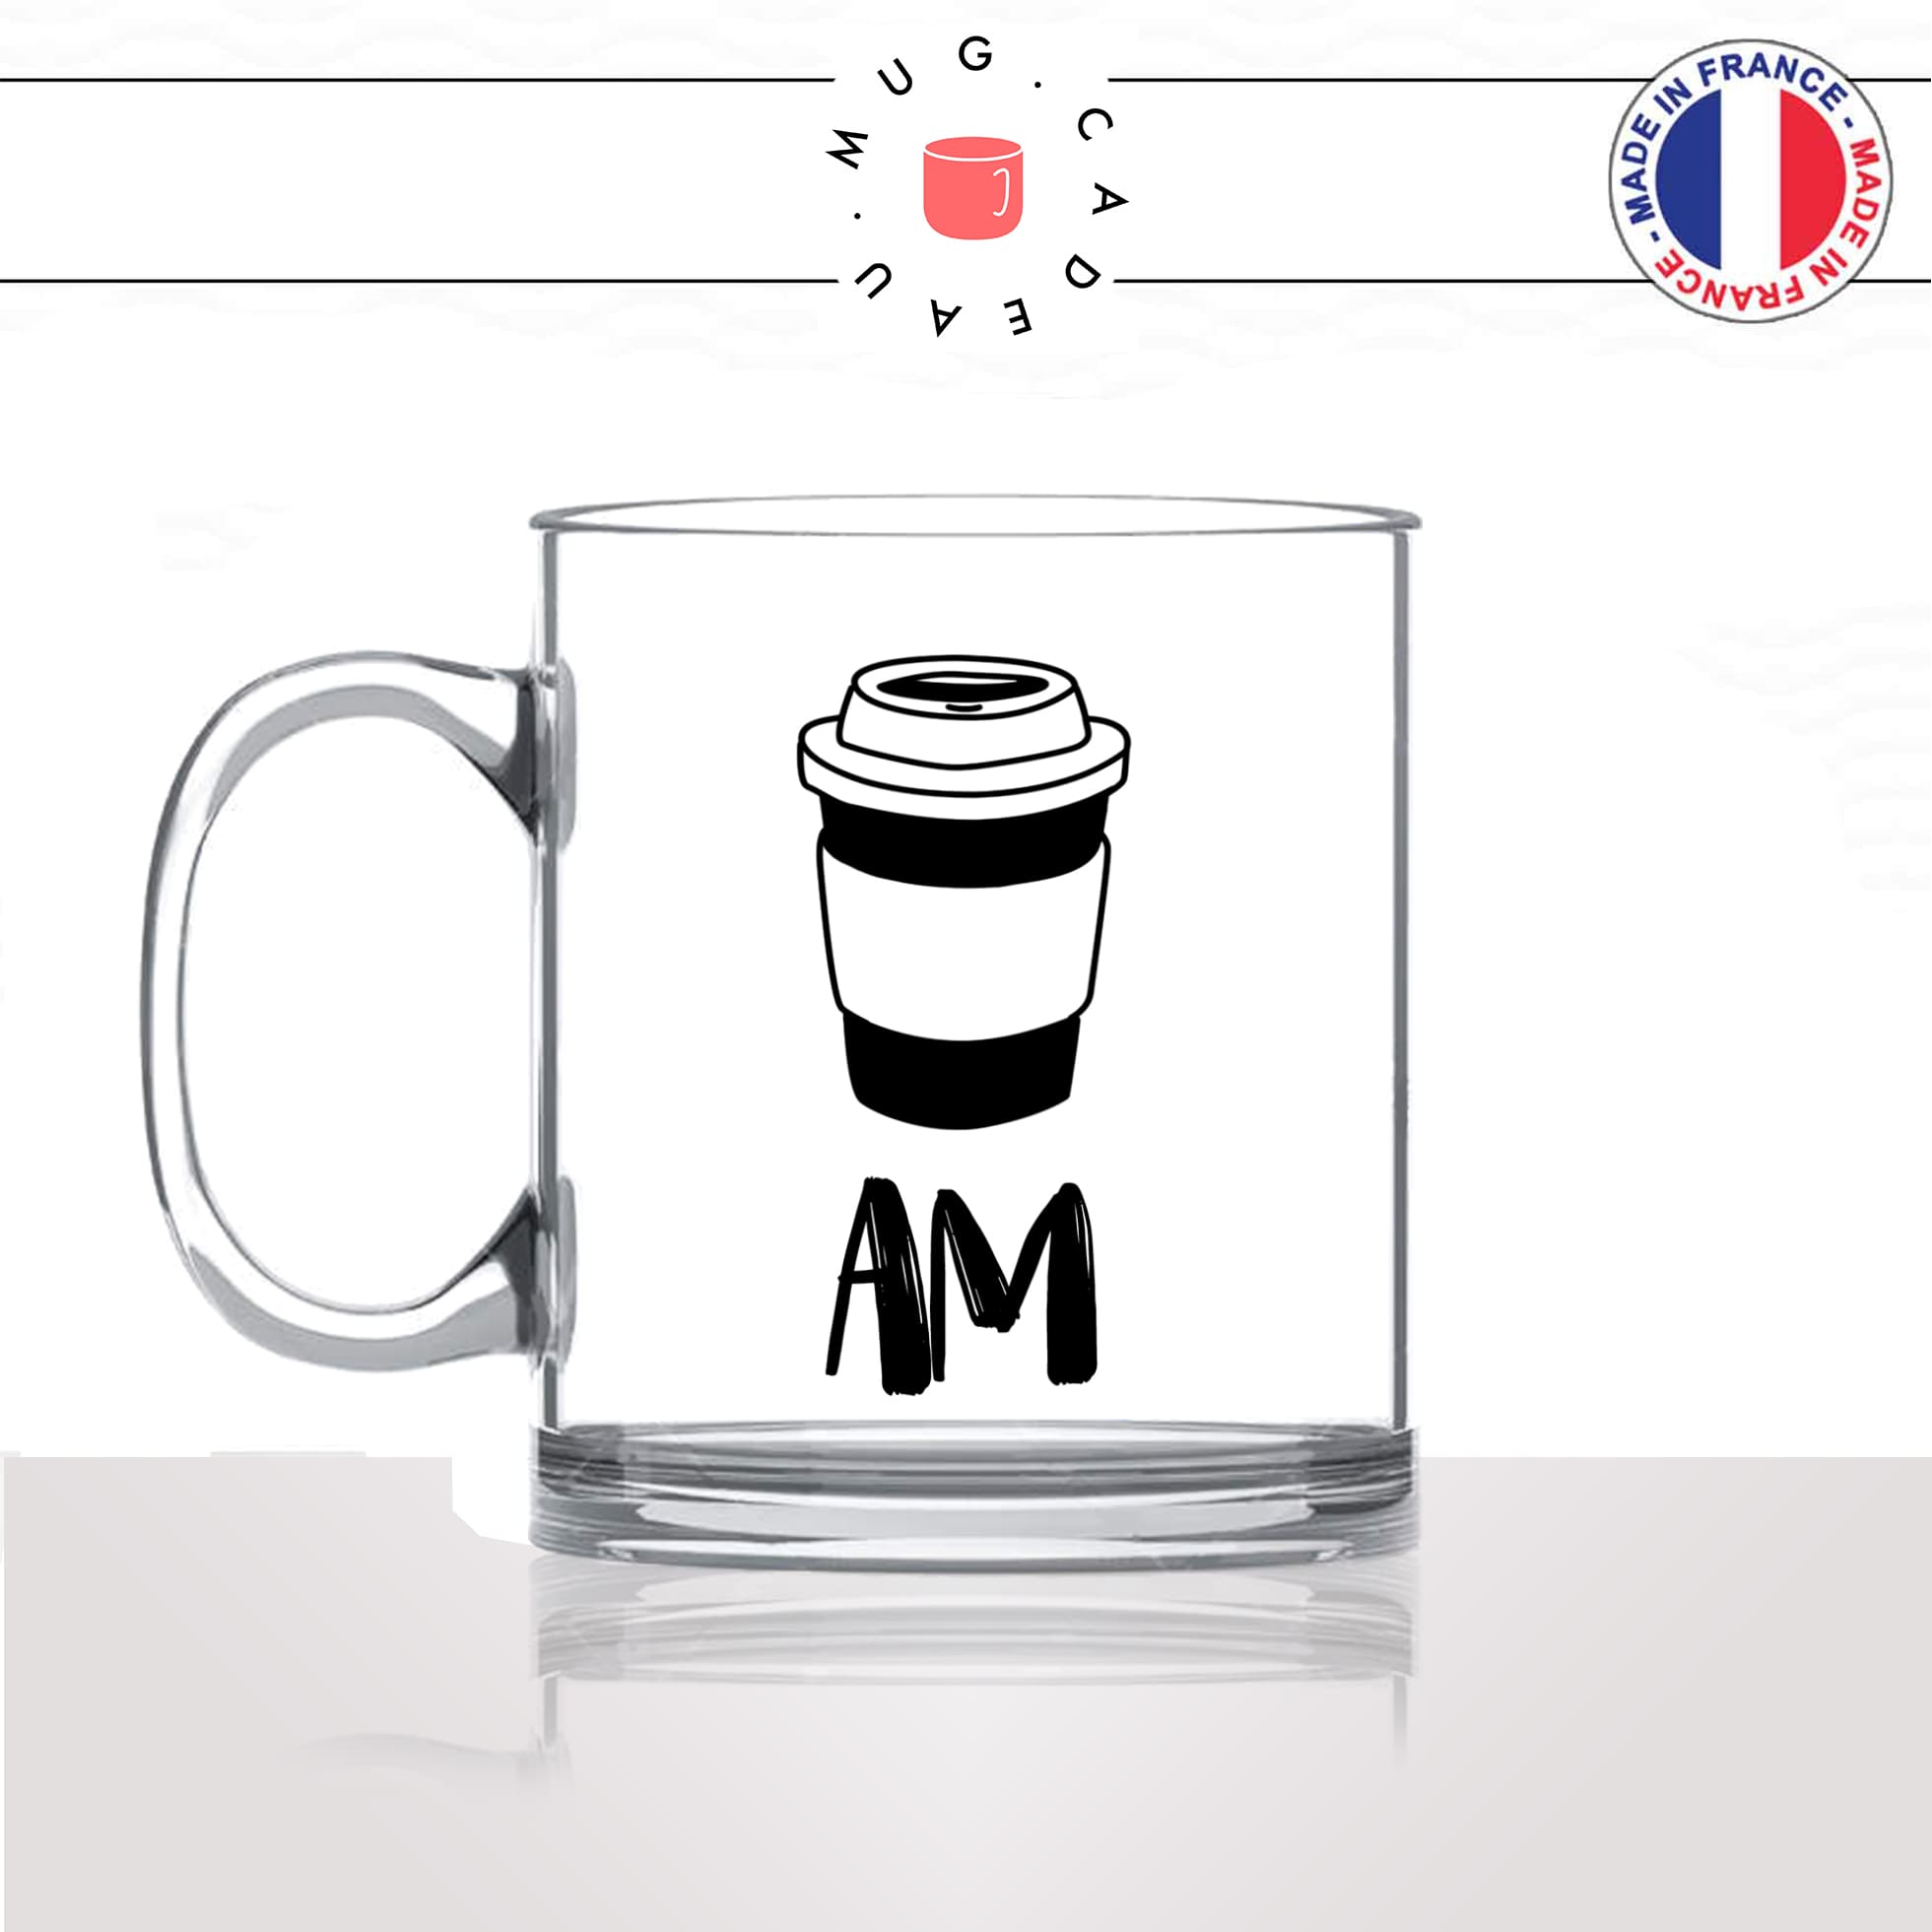 mug-tasse-en-verre-transparent-glass-am-pm-matin-soir-coffee-apero-vin-rouge-rosé-blanc-verre-a-pied-humour-idée-cadeau-fun-cool-café-thé